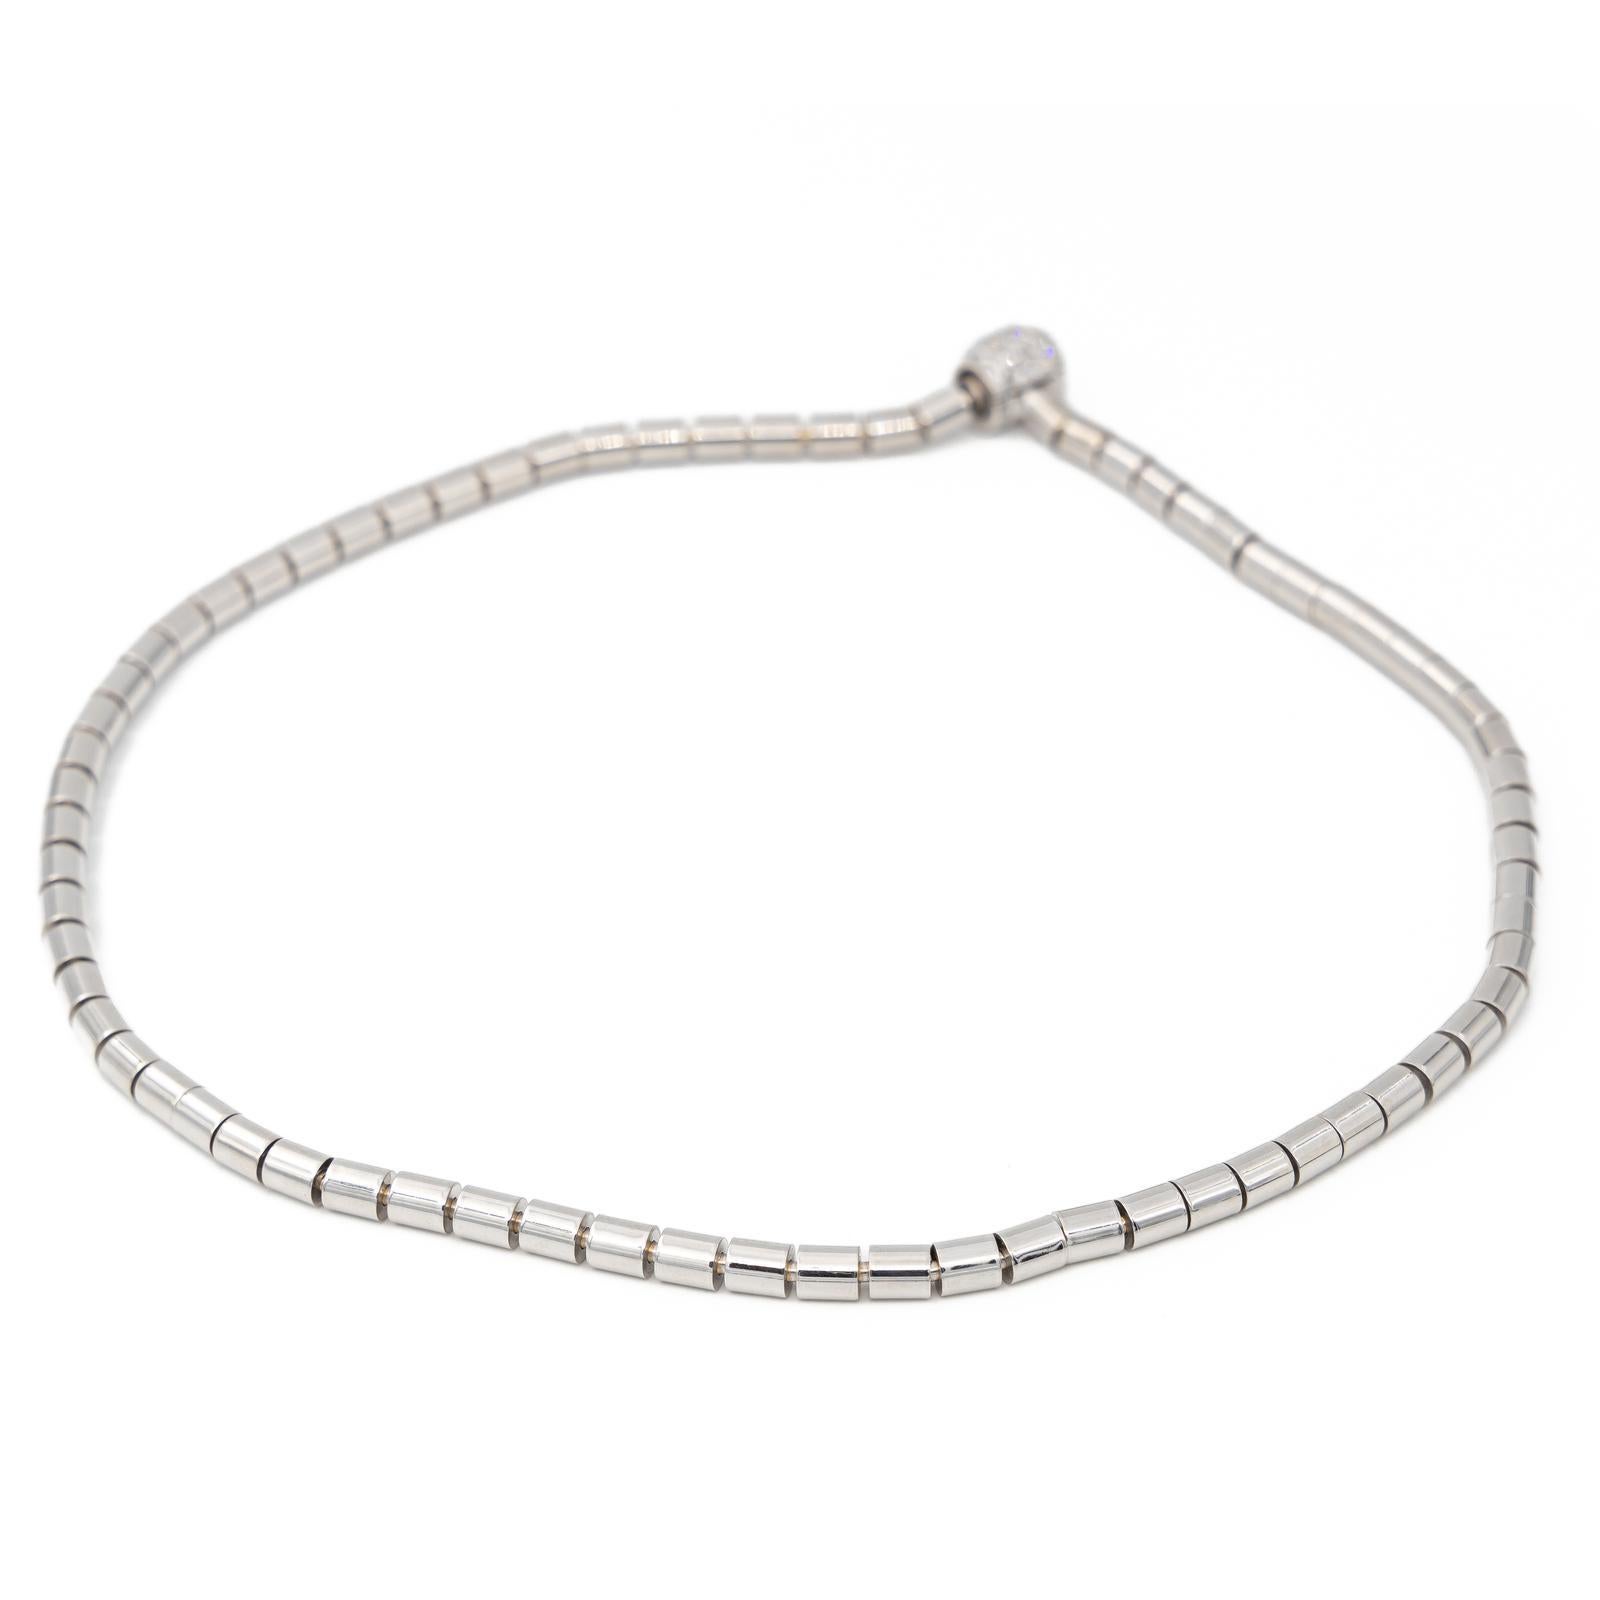 Brilliant Cut Chain Necklace White Gold Diamond